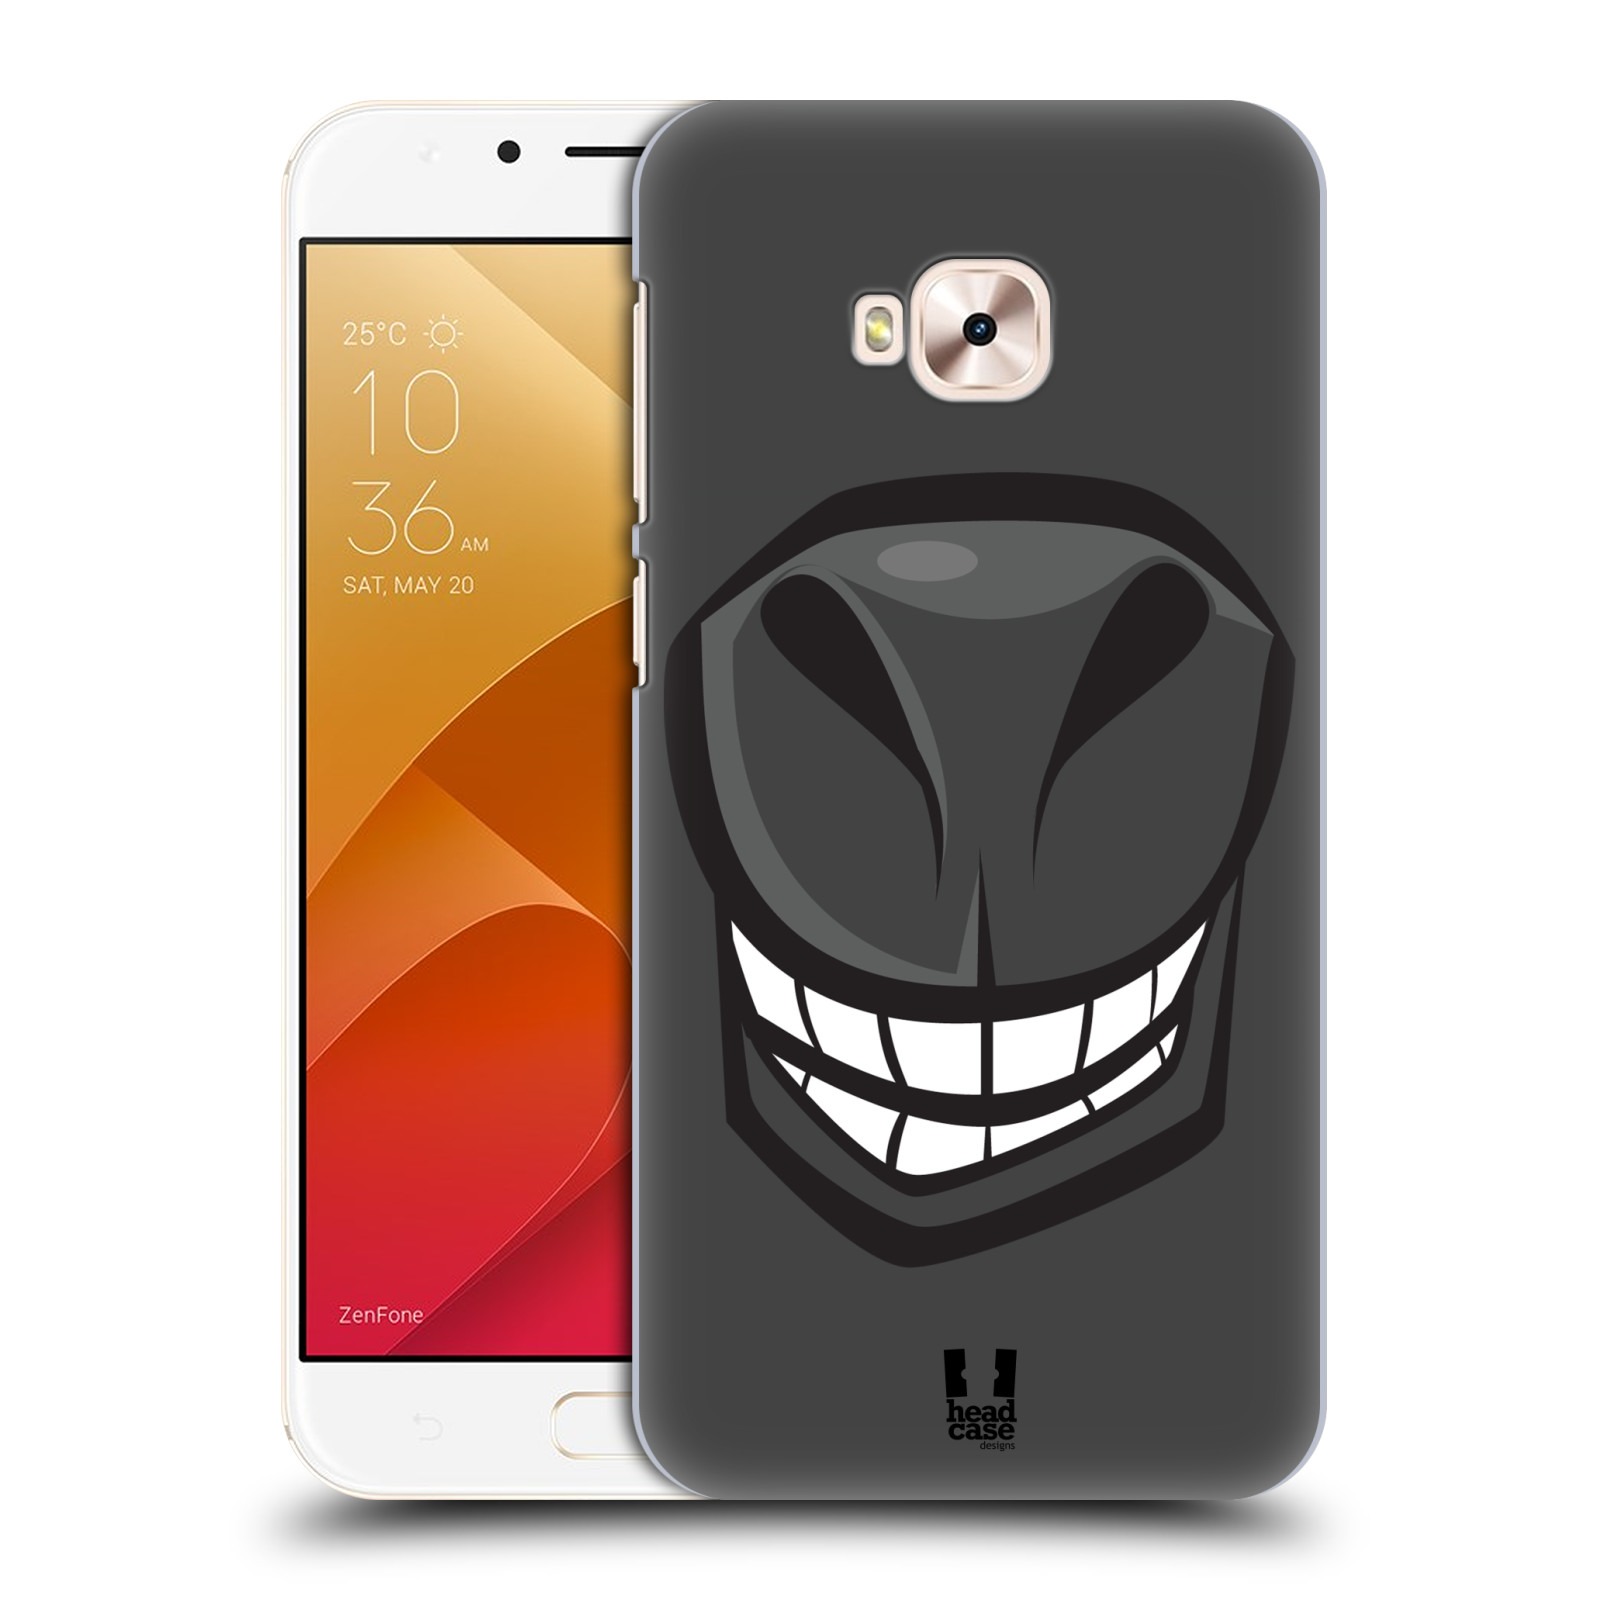 HEAD CASE plastový obal na mobil Asus Zenfone 4 Selfie Pro ZD552KL vzor Zvířecí úsměv kůň šedá